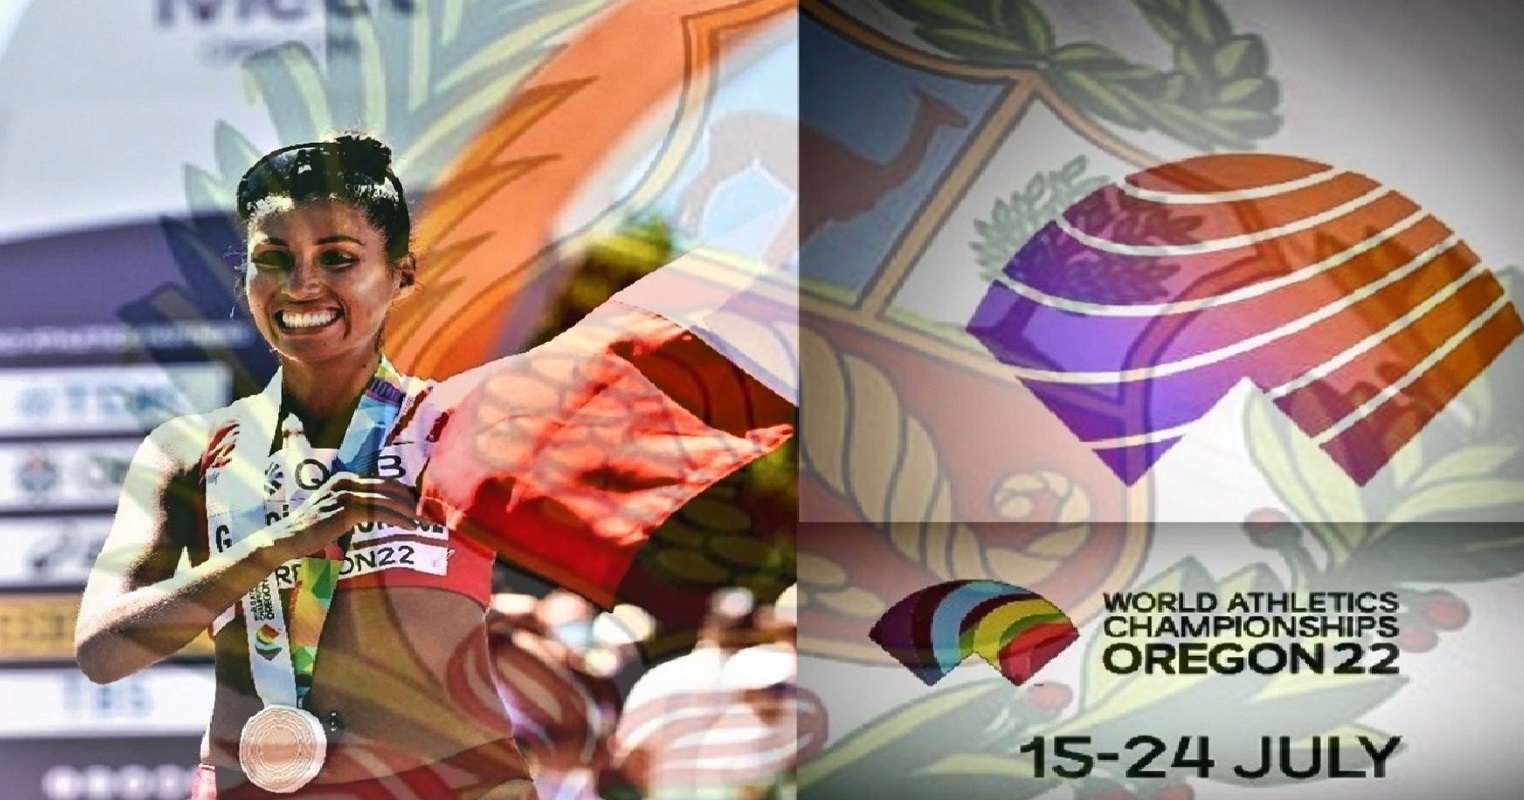 Atleta peruana Gabriela Kimberly García León "Kimy", se adjudica la medalla de oro en el Campeonato Mundial de Atletismo, en Oregón EE.UU.